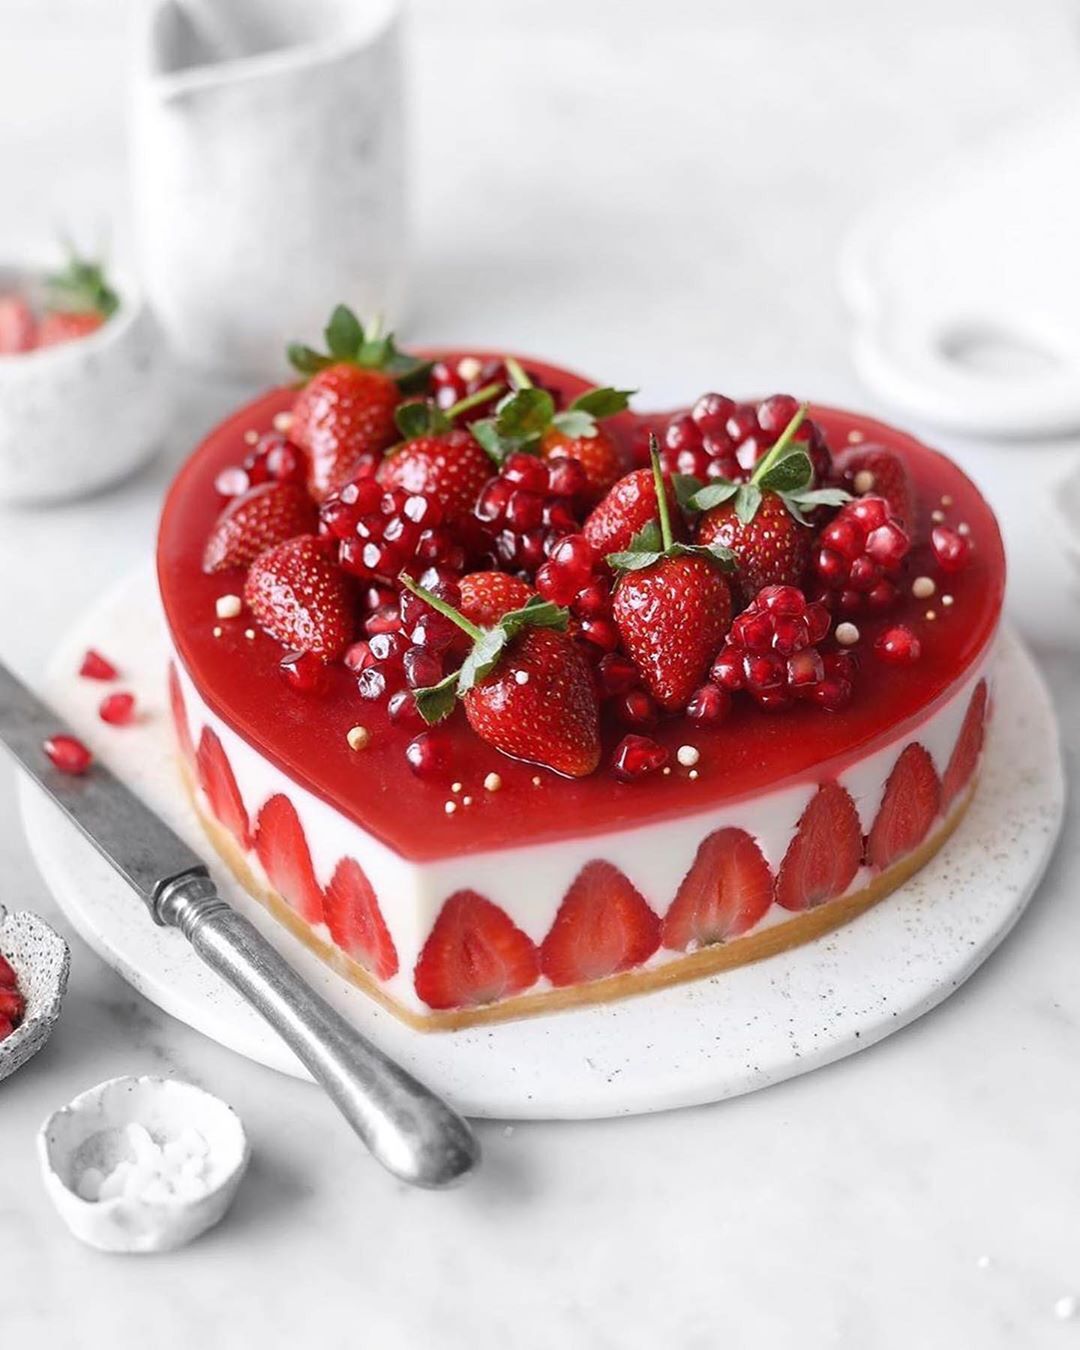 کیک با تزئین توت فرنگی برای روز ولنتاین